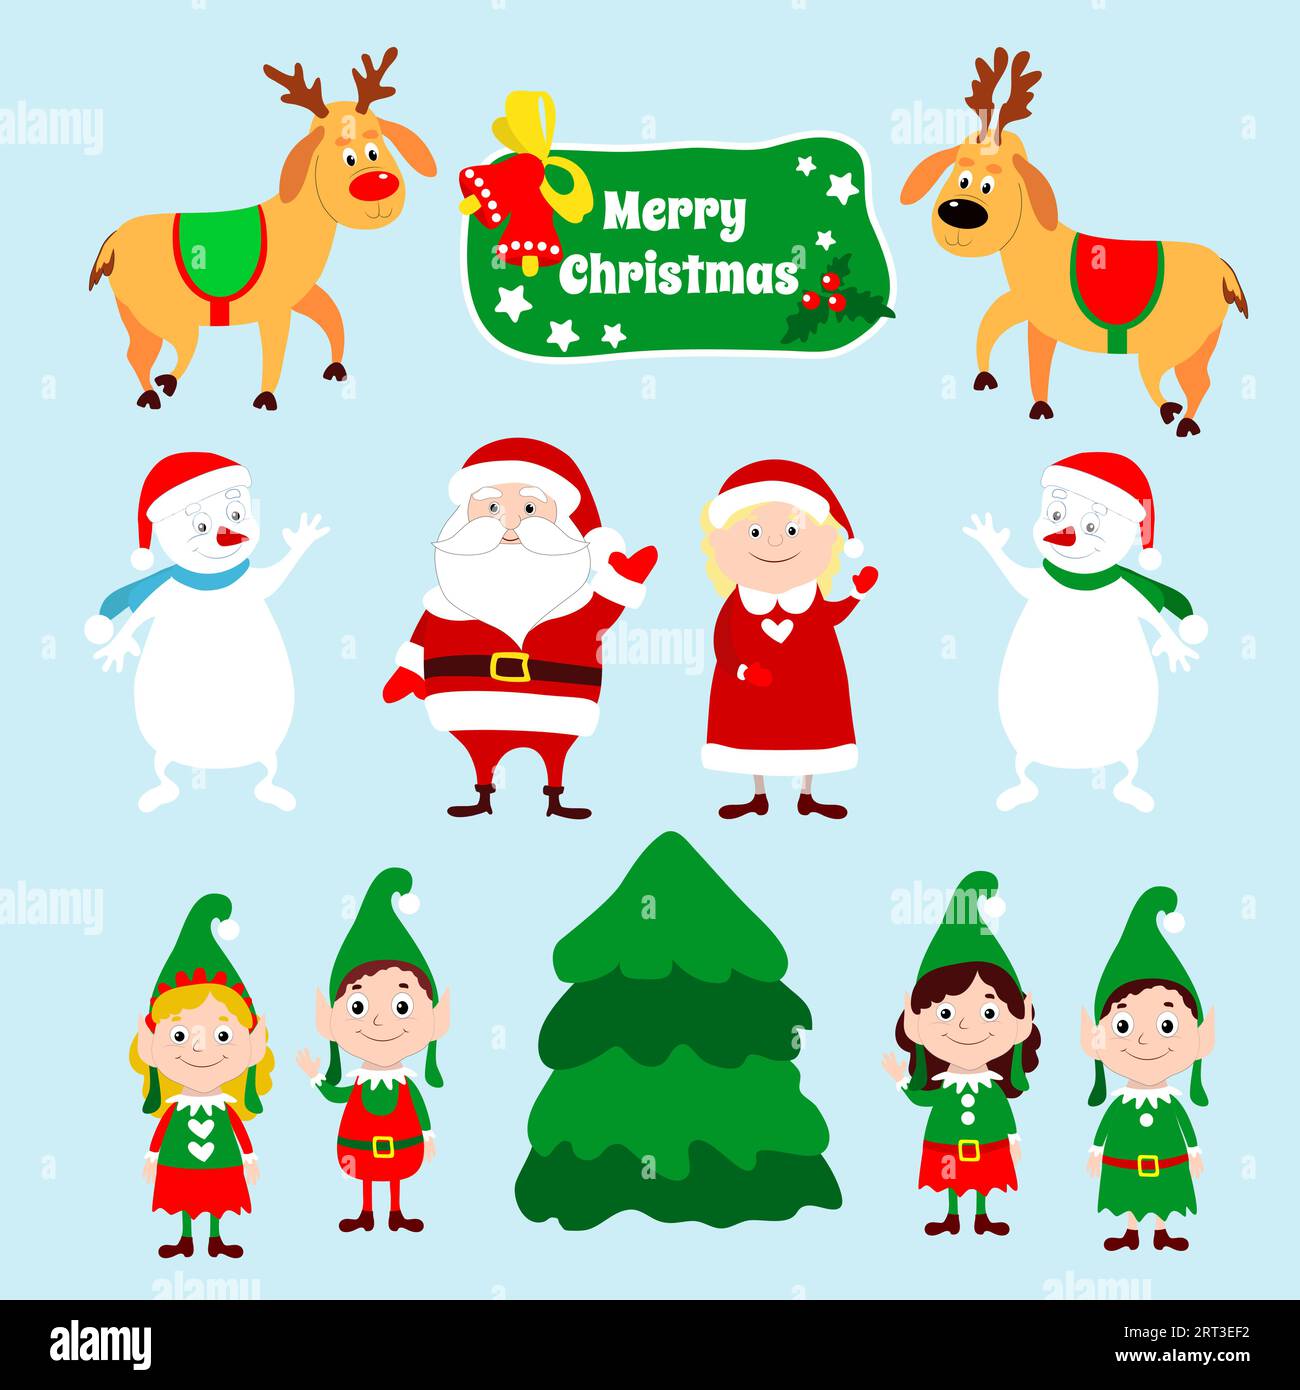 Ensemble de personnages de Noël Père Noël, Mme Claus, cerfs, bonhommes de neige et petits elfes. Les personnages de dessins animés hivernaux agitent leurs mains. Illustration de Vecteur